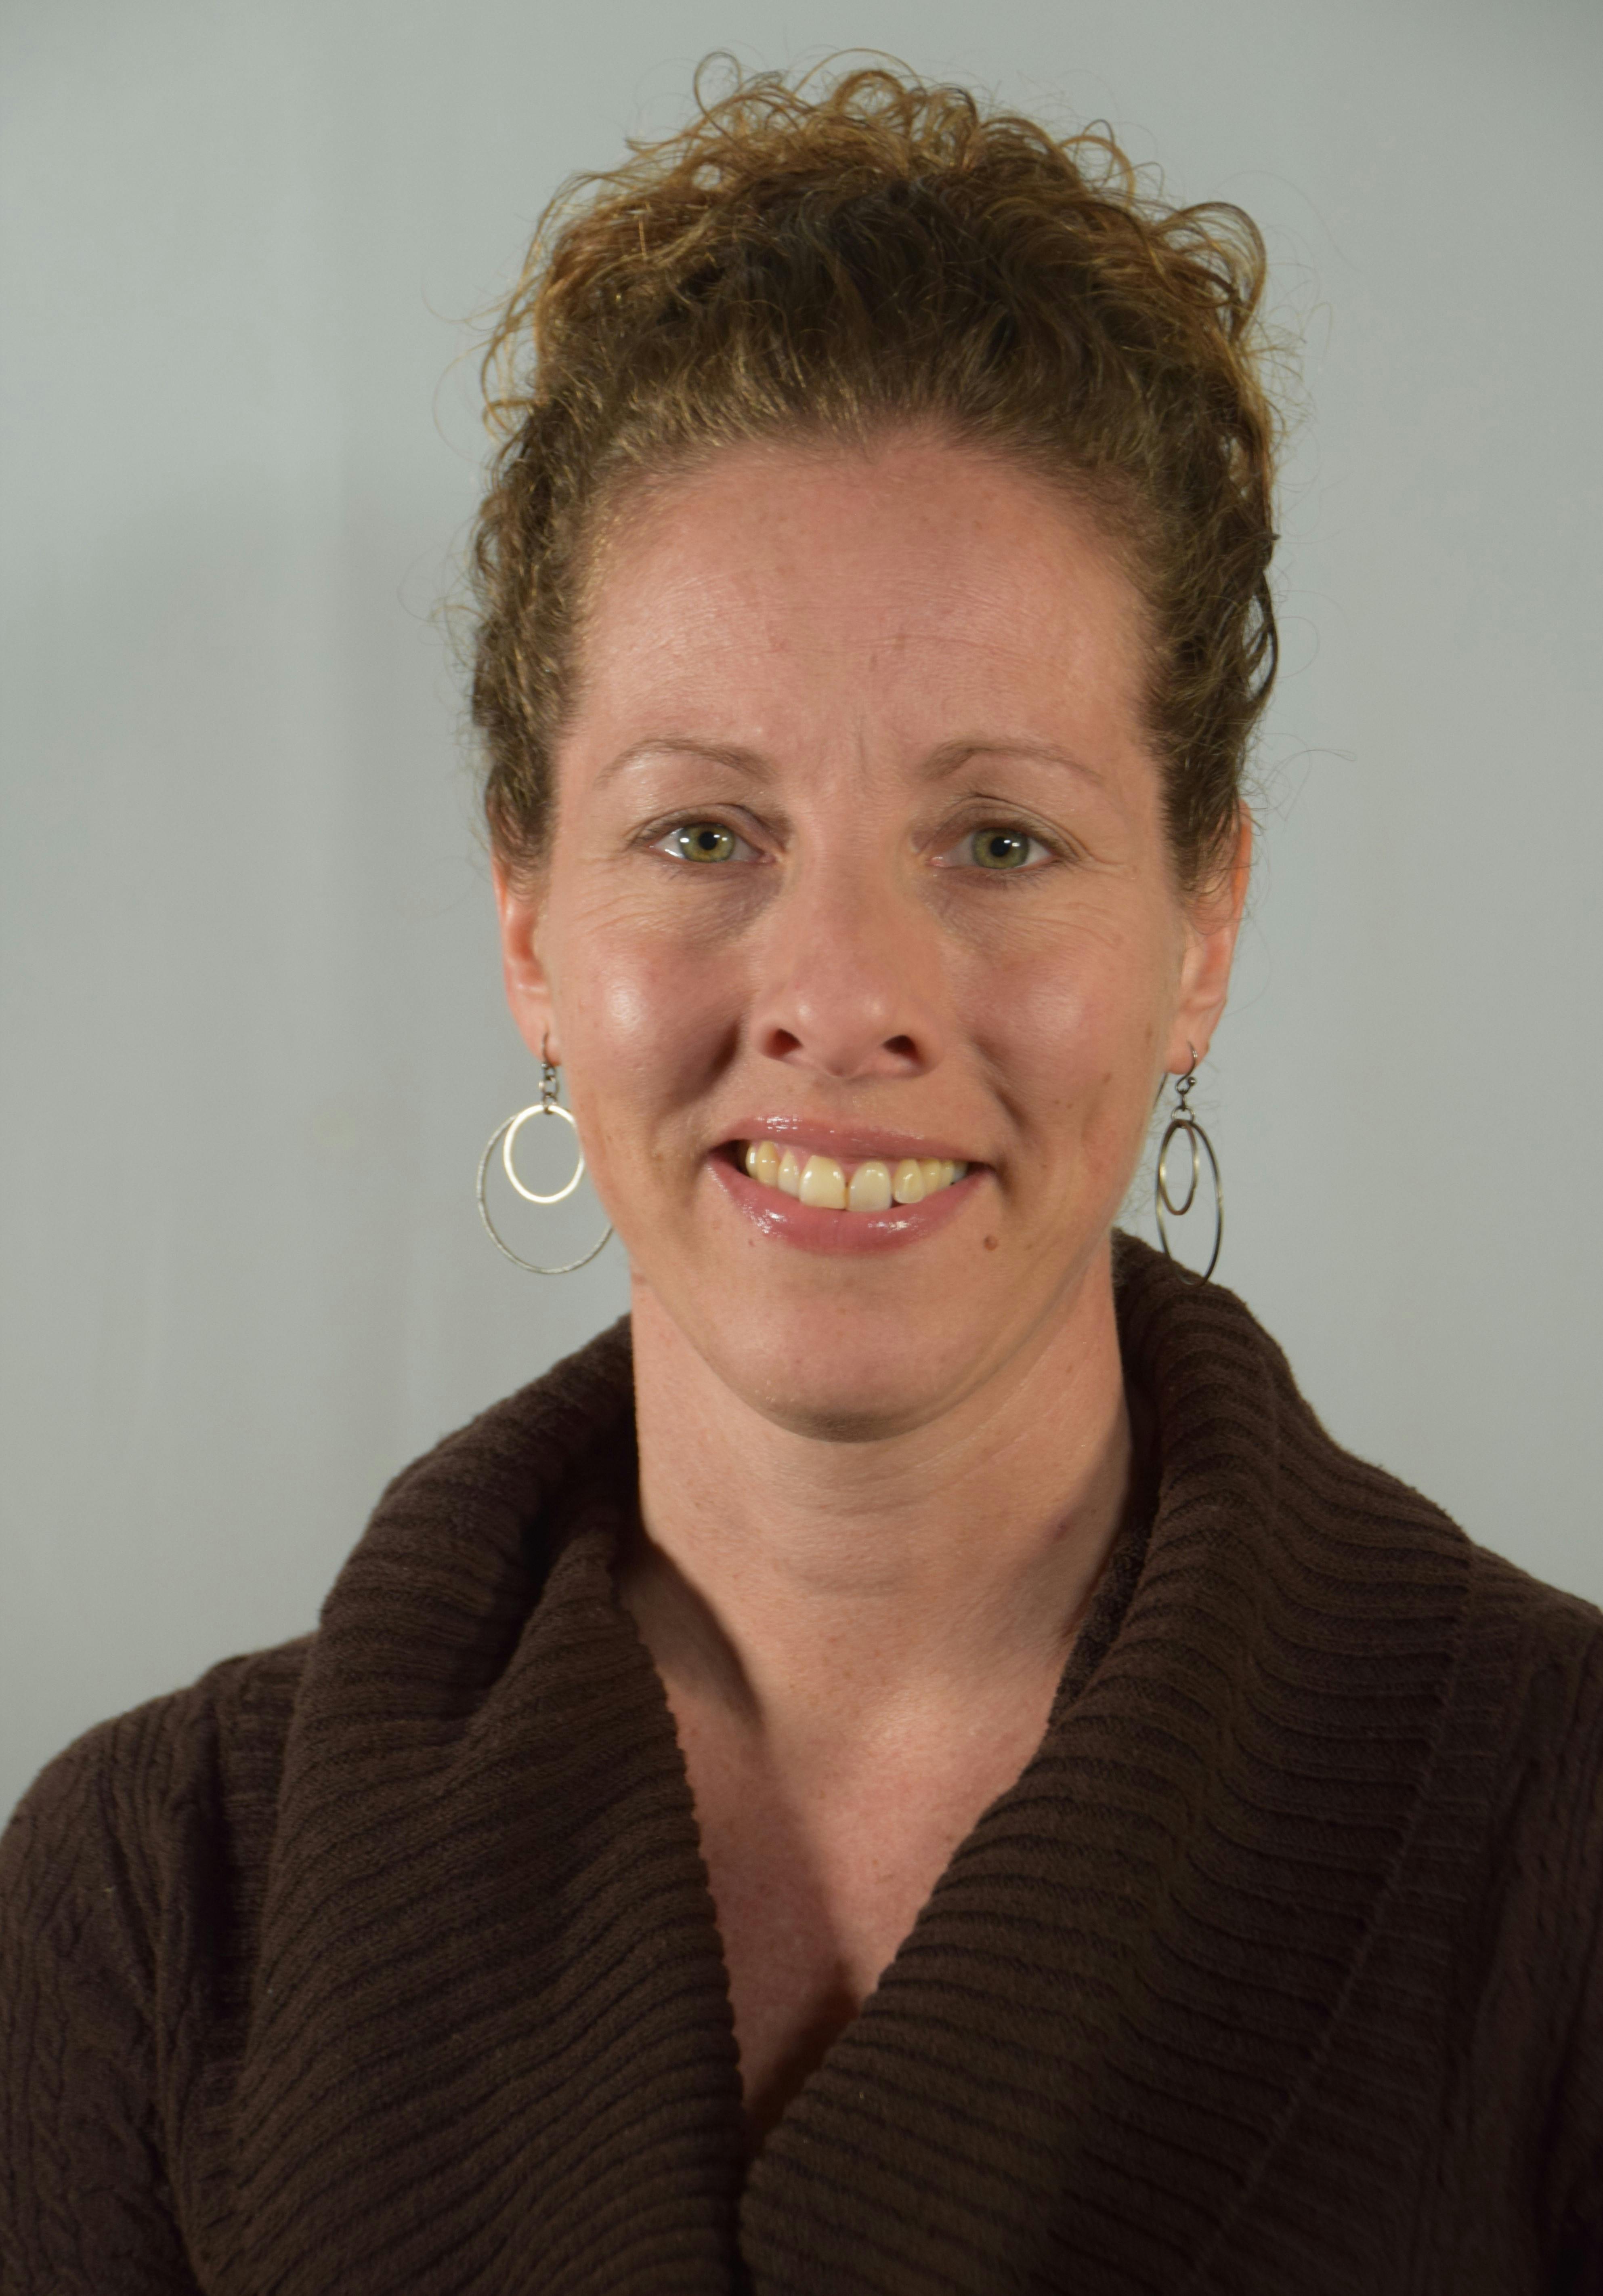 Team member, Sara Woeste